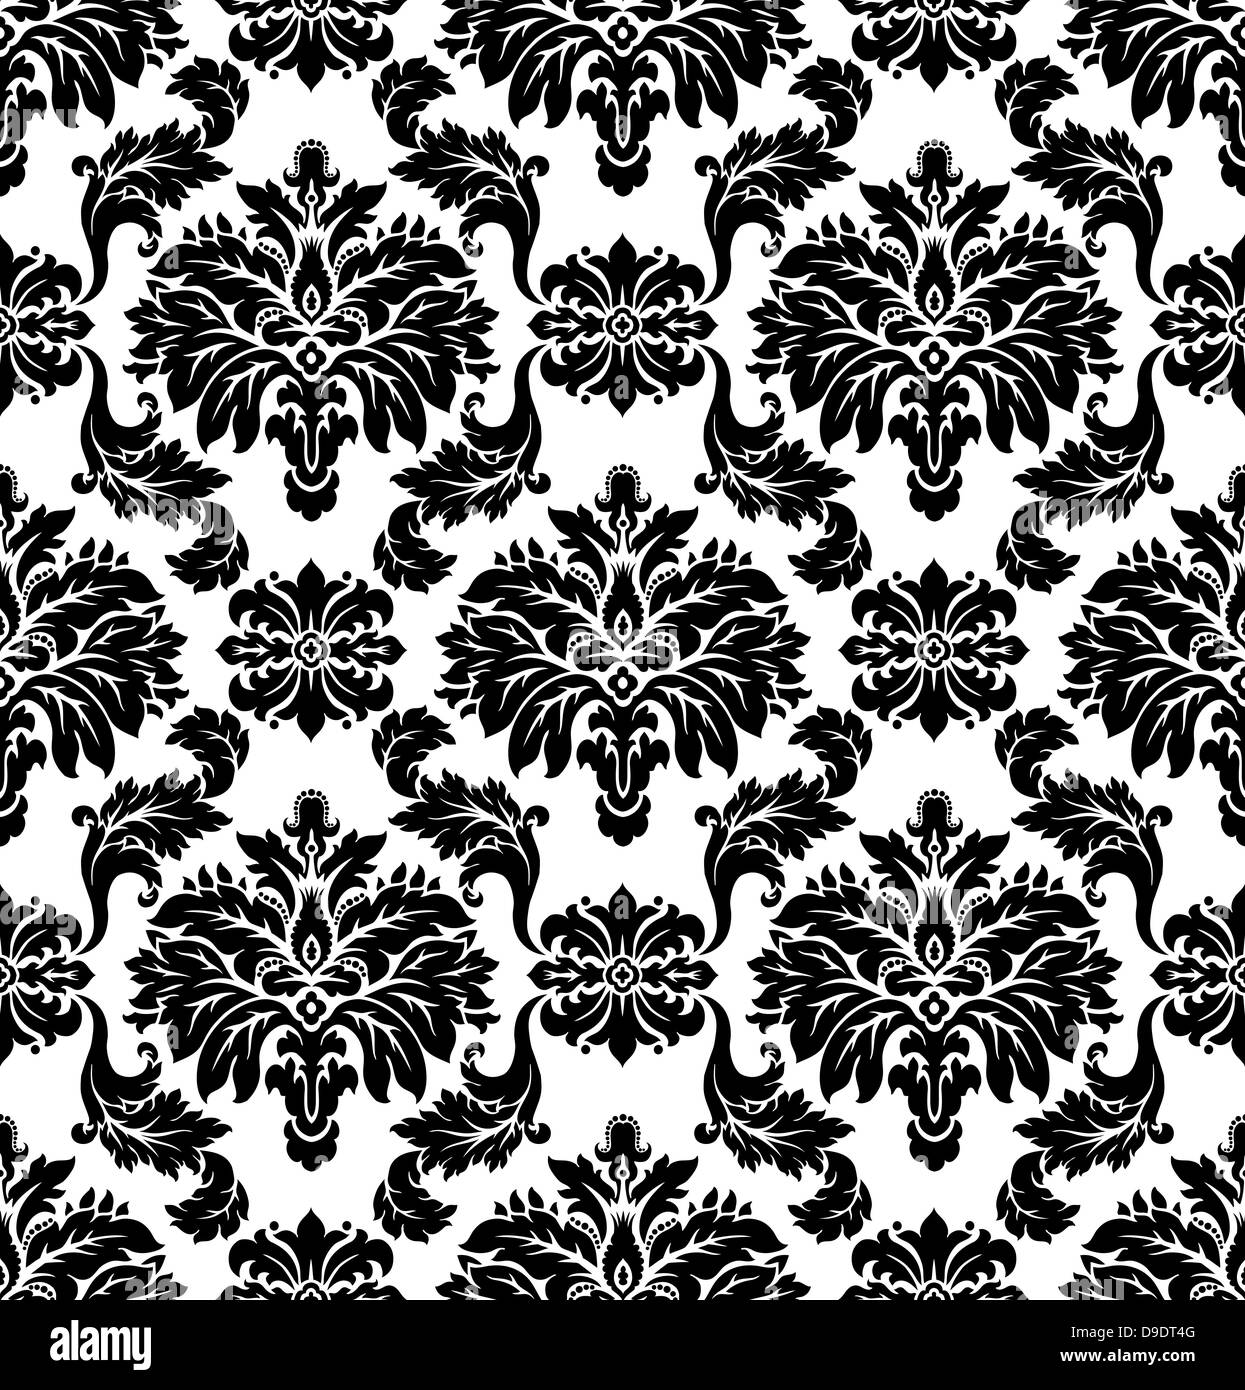 Seamless damask pattern Stock Photo